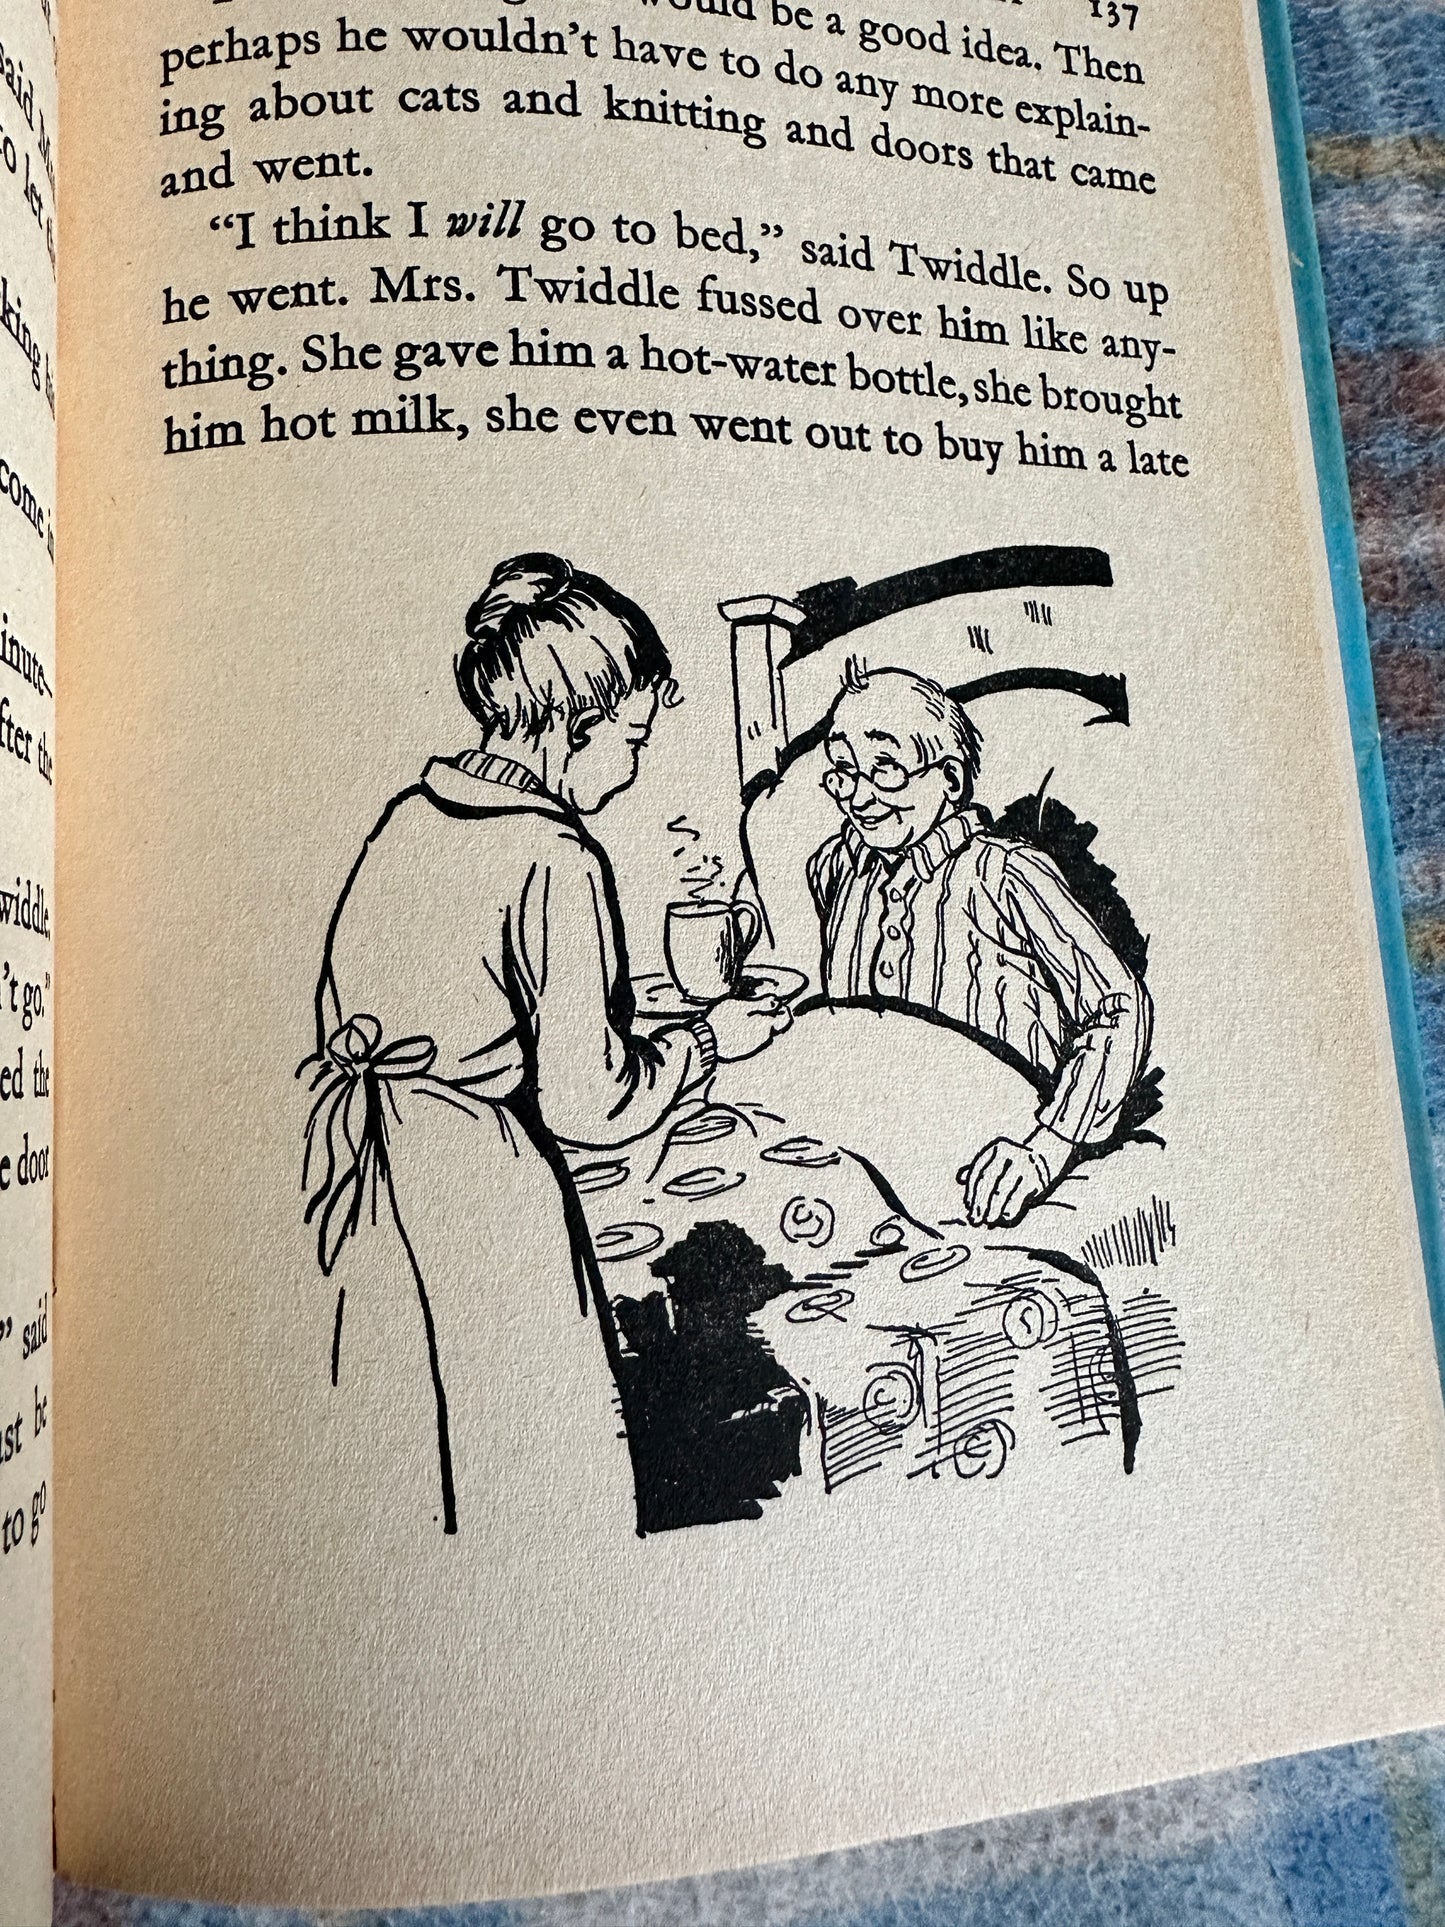 1968 Well, Really Mr. Twiddle - Enid Blyton(George Newnes Ltd published by Dean & Son Ltd)